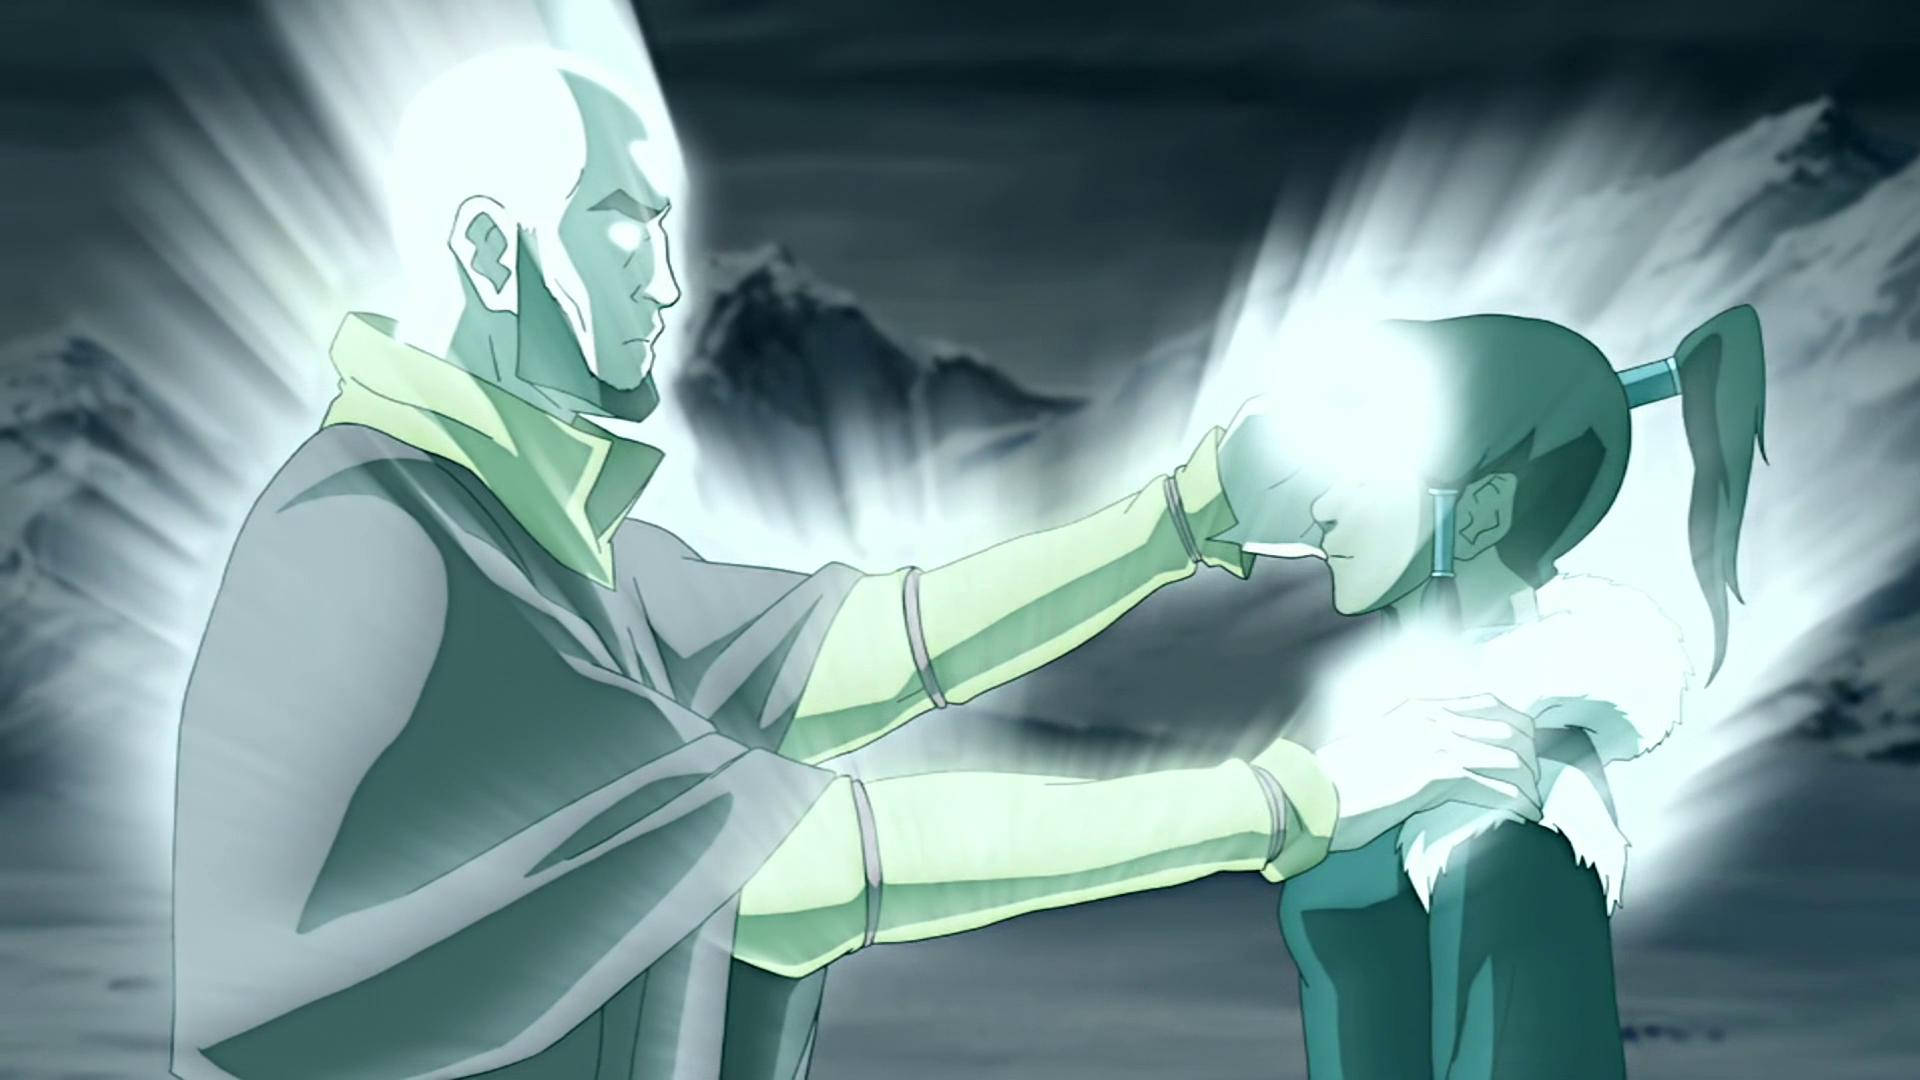 The Next Avatar: Korra, Aang's Successor In The Legend Of Korra